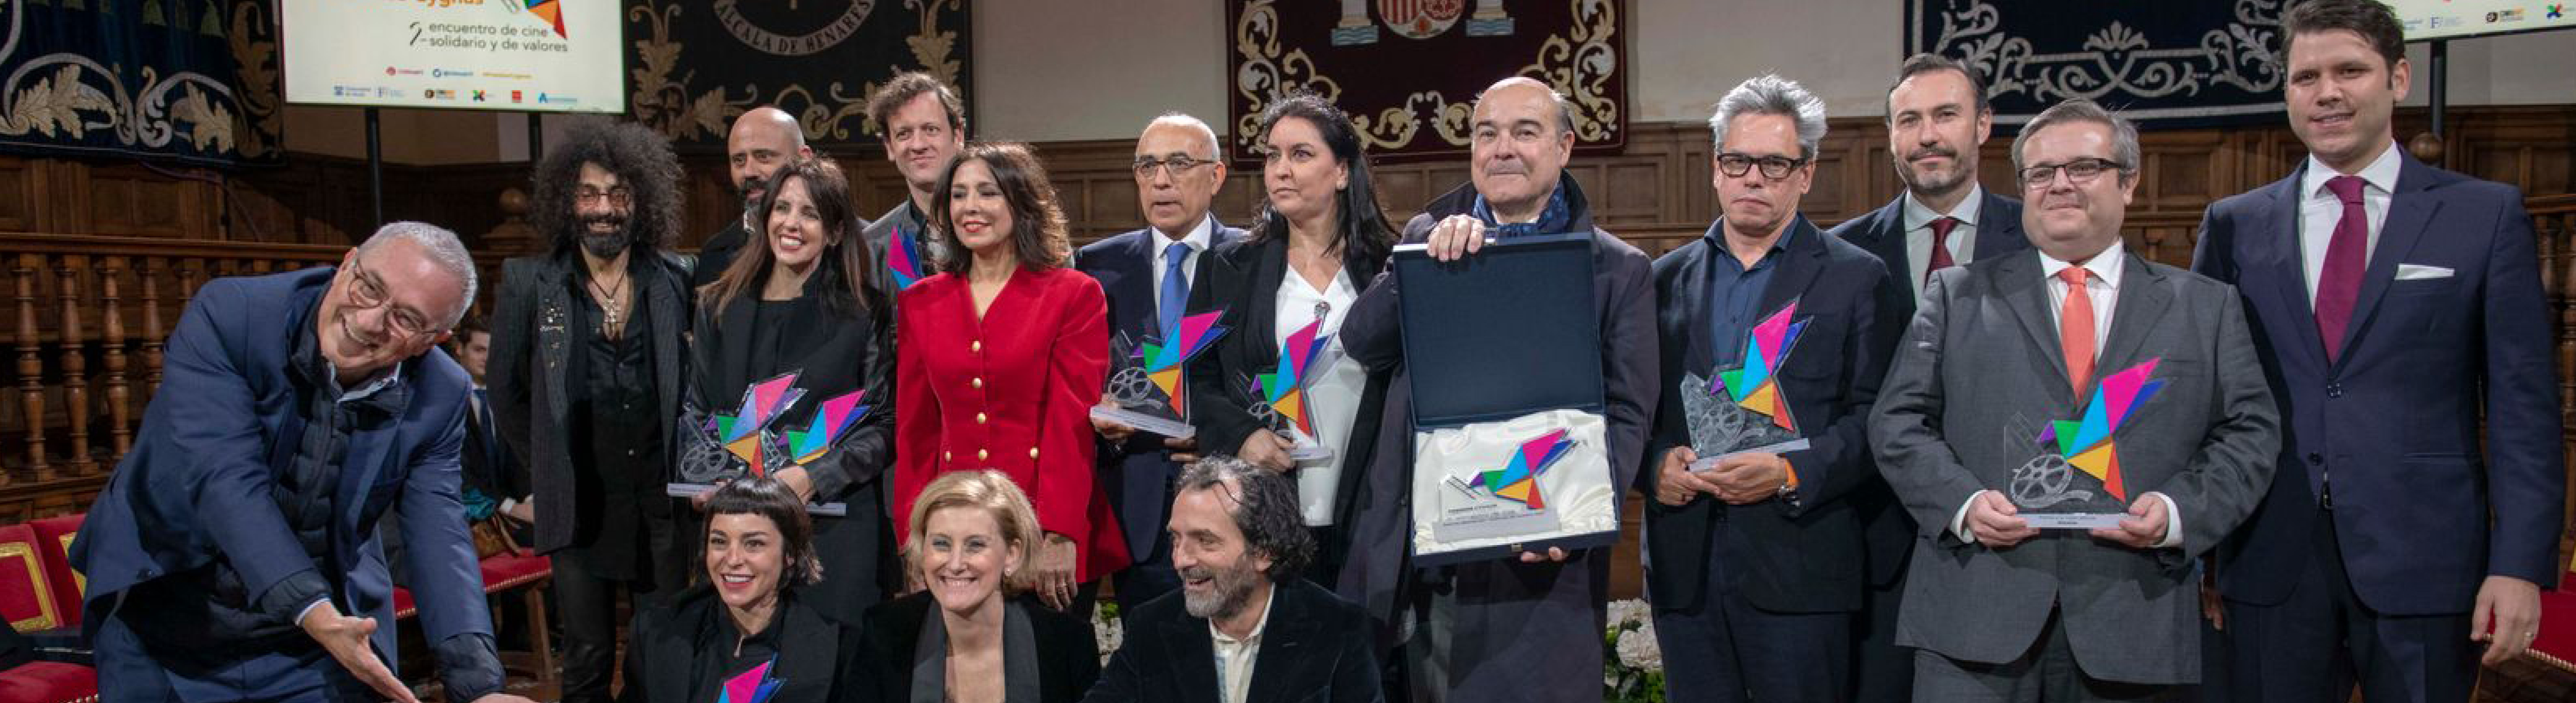 Premios CYGNUS. Cine solidario